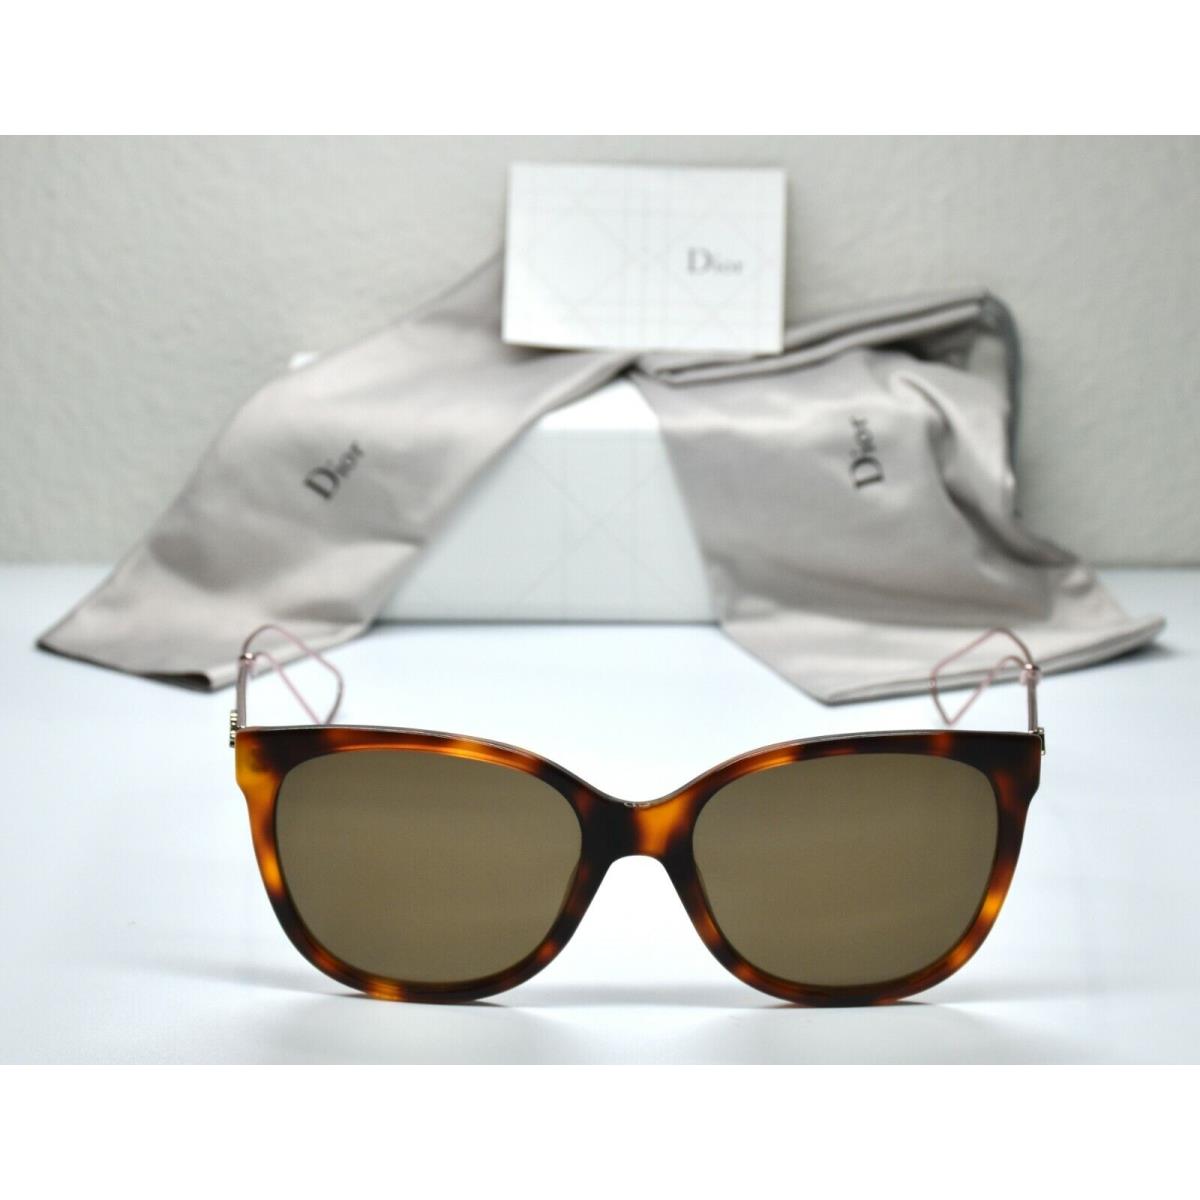 Dior sunglasses AMA - Brown Frame, Brown Lens, Havana & Copper Manufacturer 3